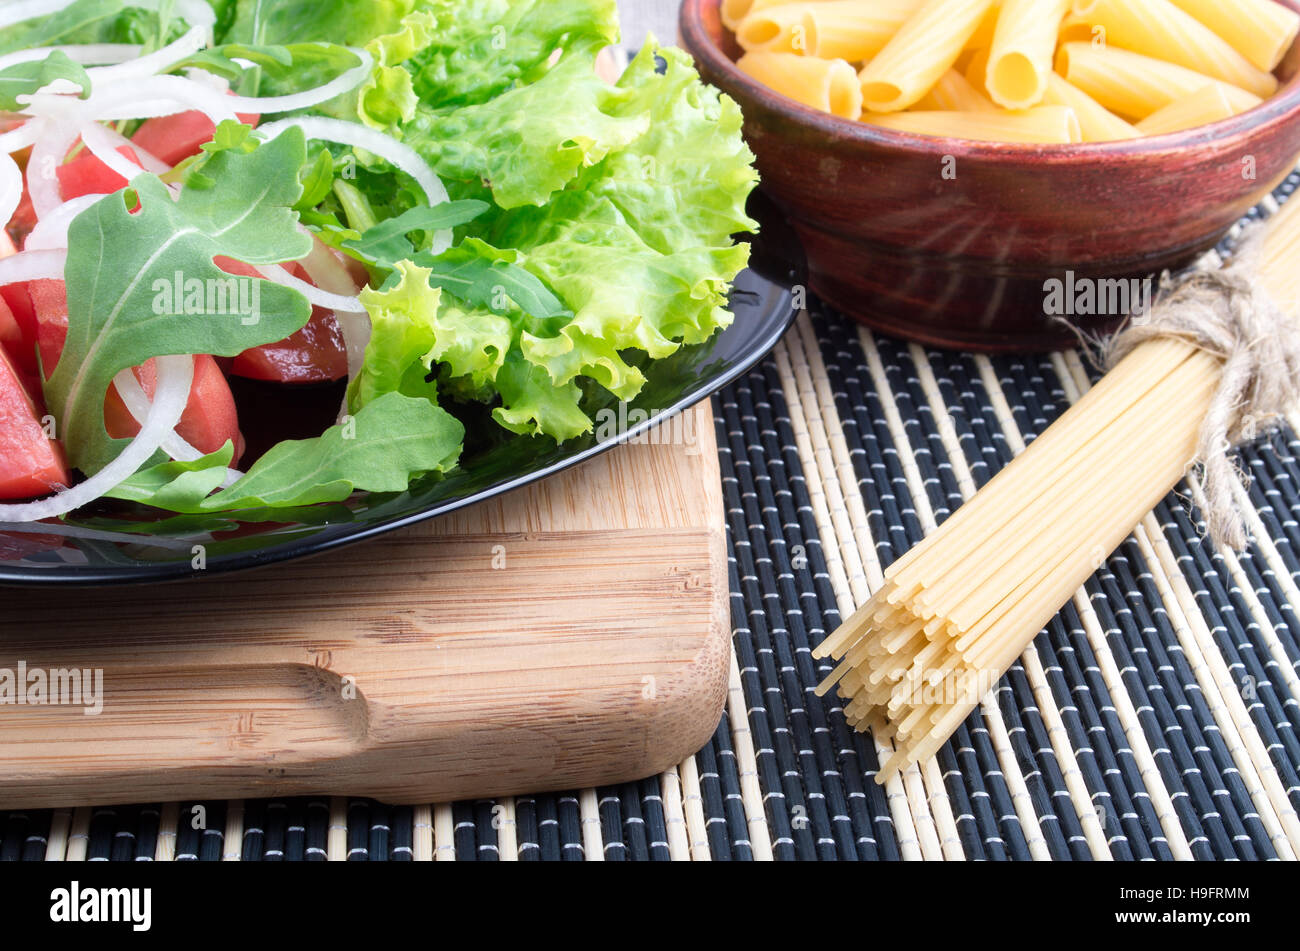 Composition sur la table avec une salade de tomates, oignons, laitue et roquette sur un support en bois, des pâtes et des spaghettis pour la cuisson Banque D'Images